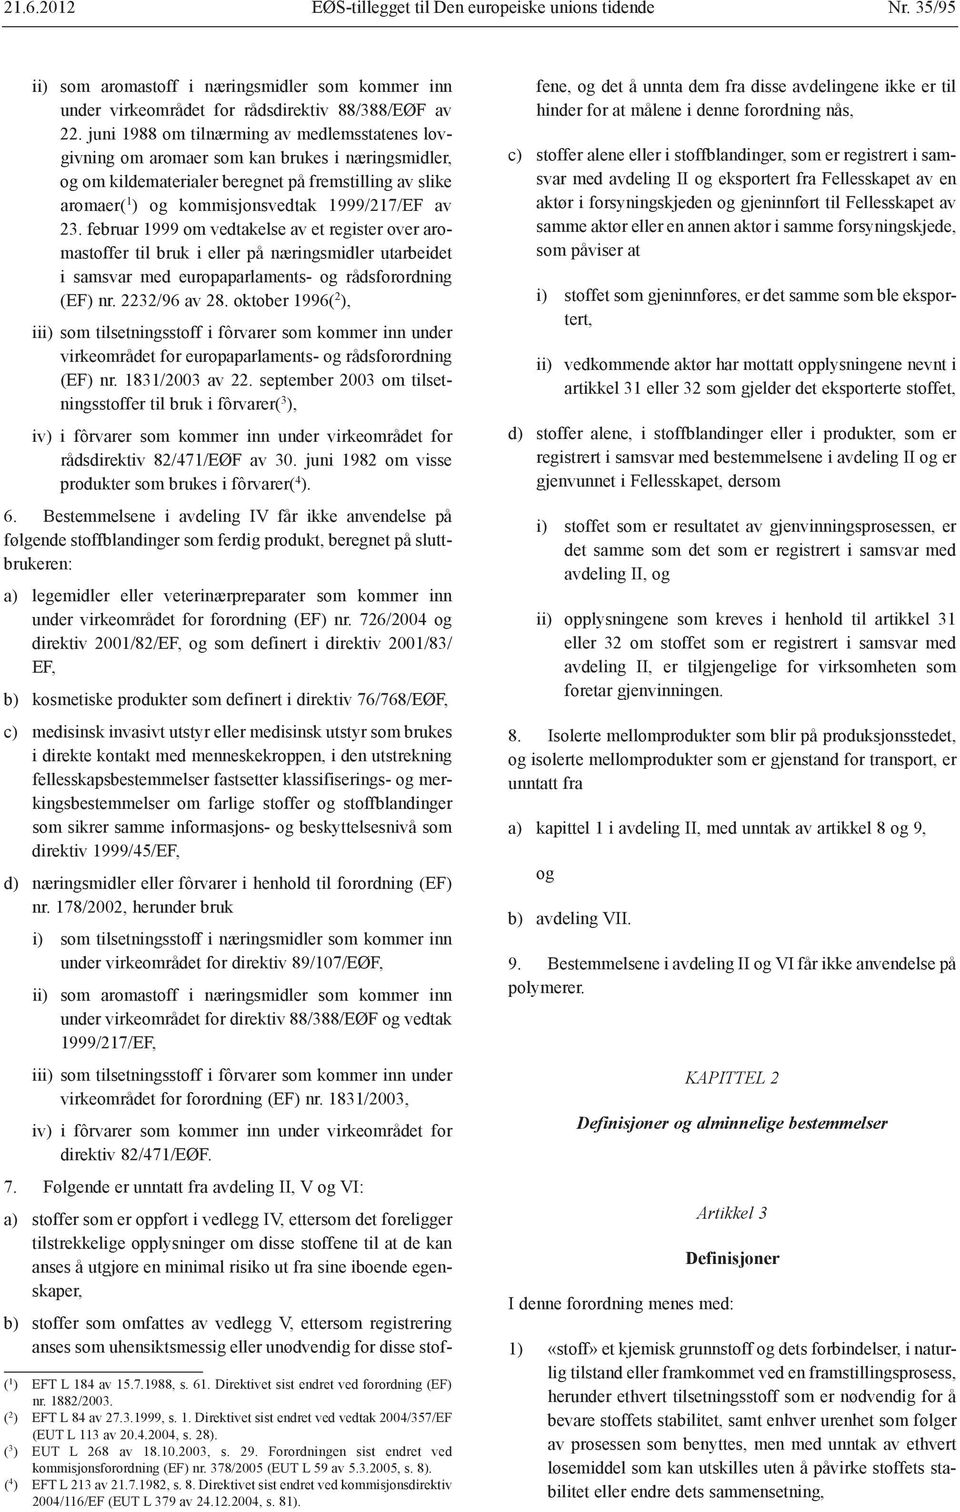 av 23. februar 1999 om vedtakelse av et register over aromastoffer til bruk i eller på næringsmidler utarbeidet i samsvar med europaparlaments- og rådsforordning (EF) nr. 2232/96 av 28.